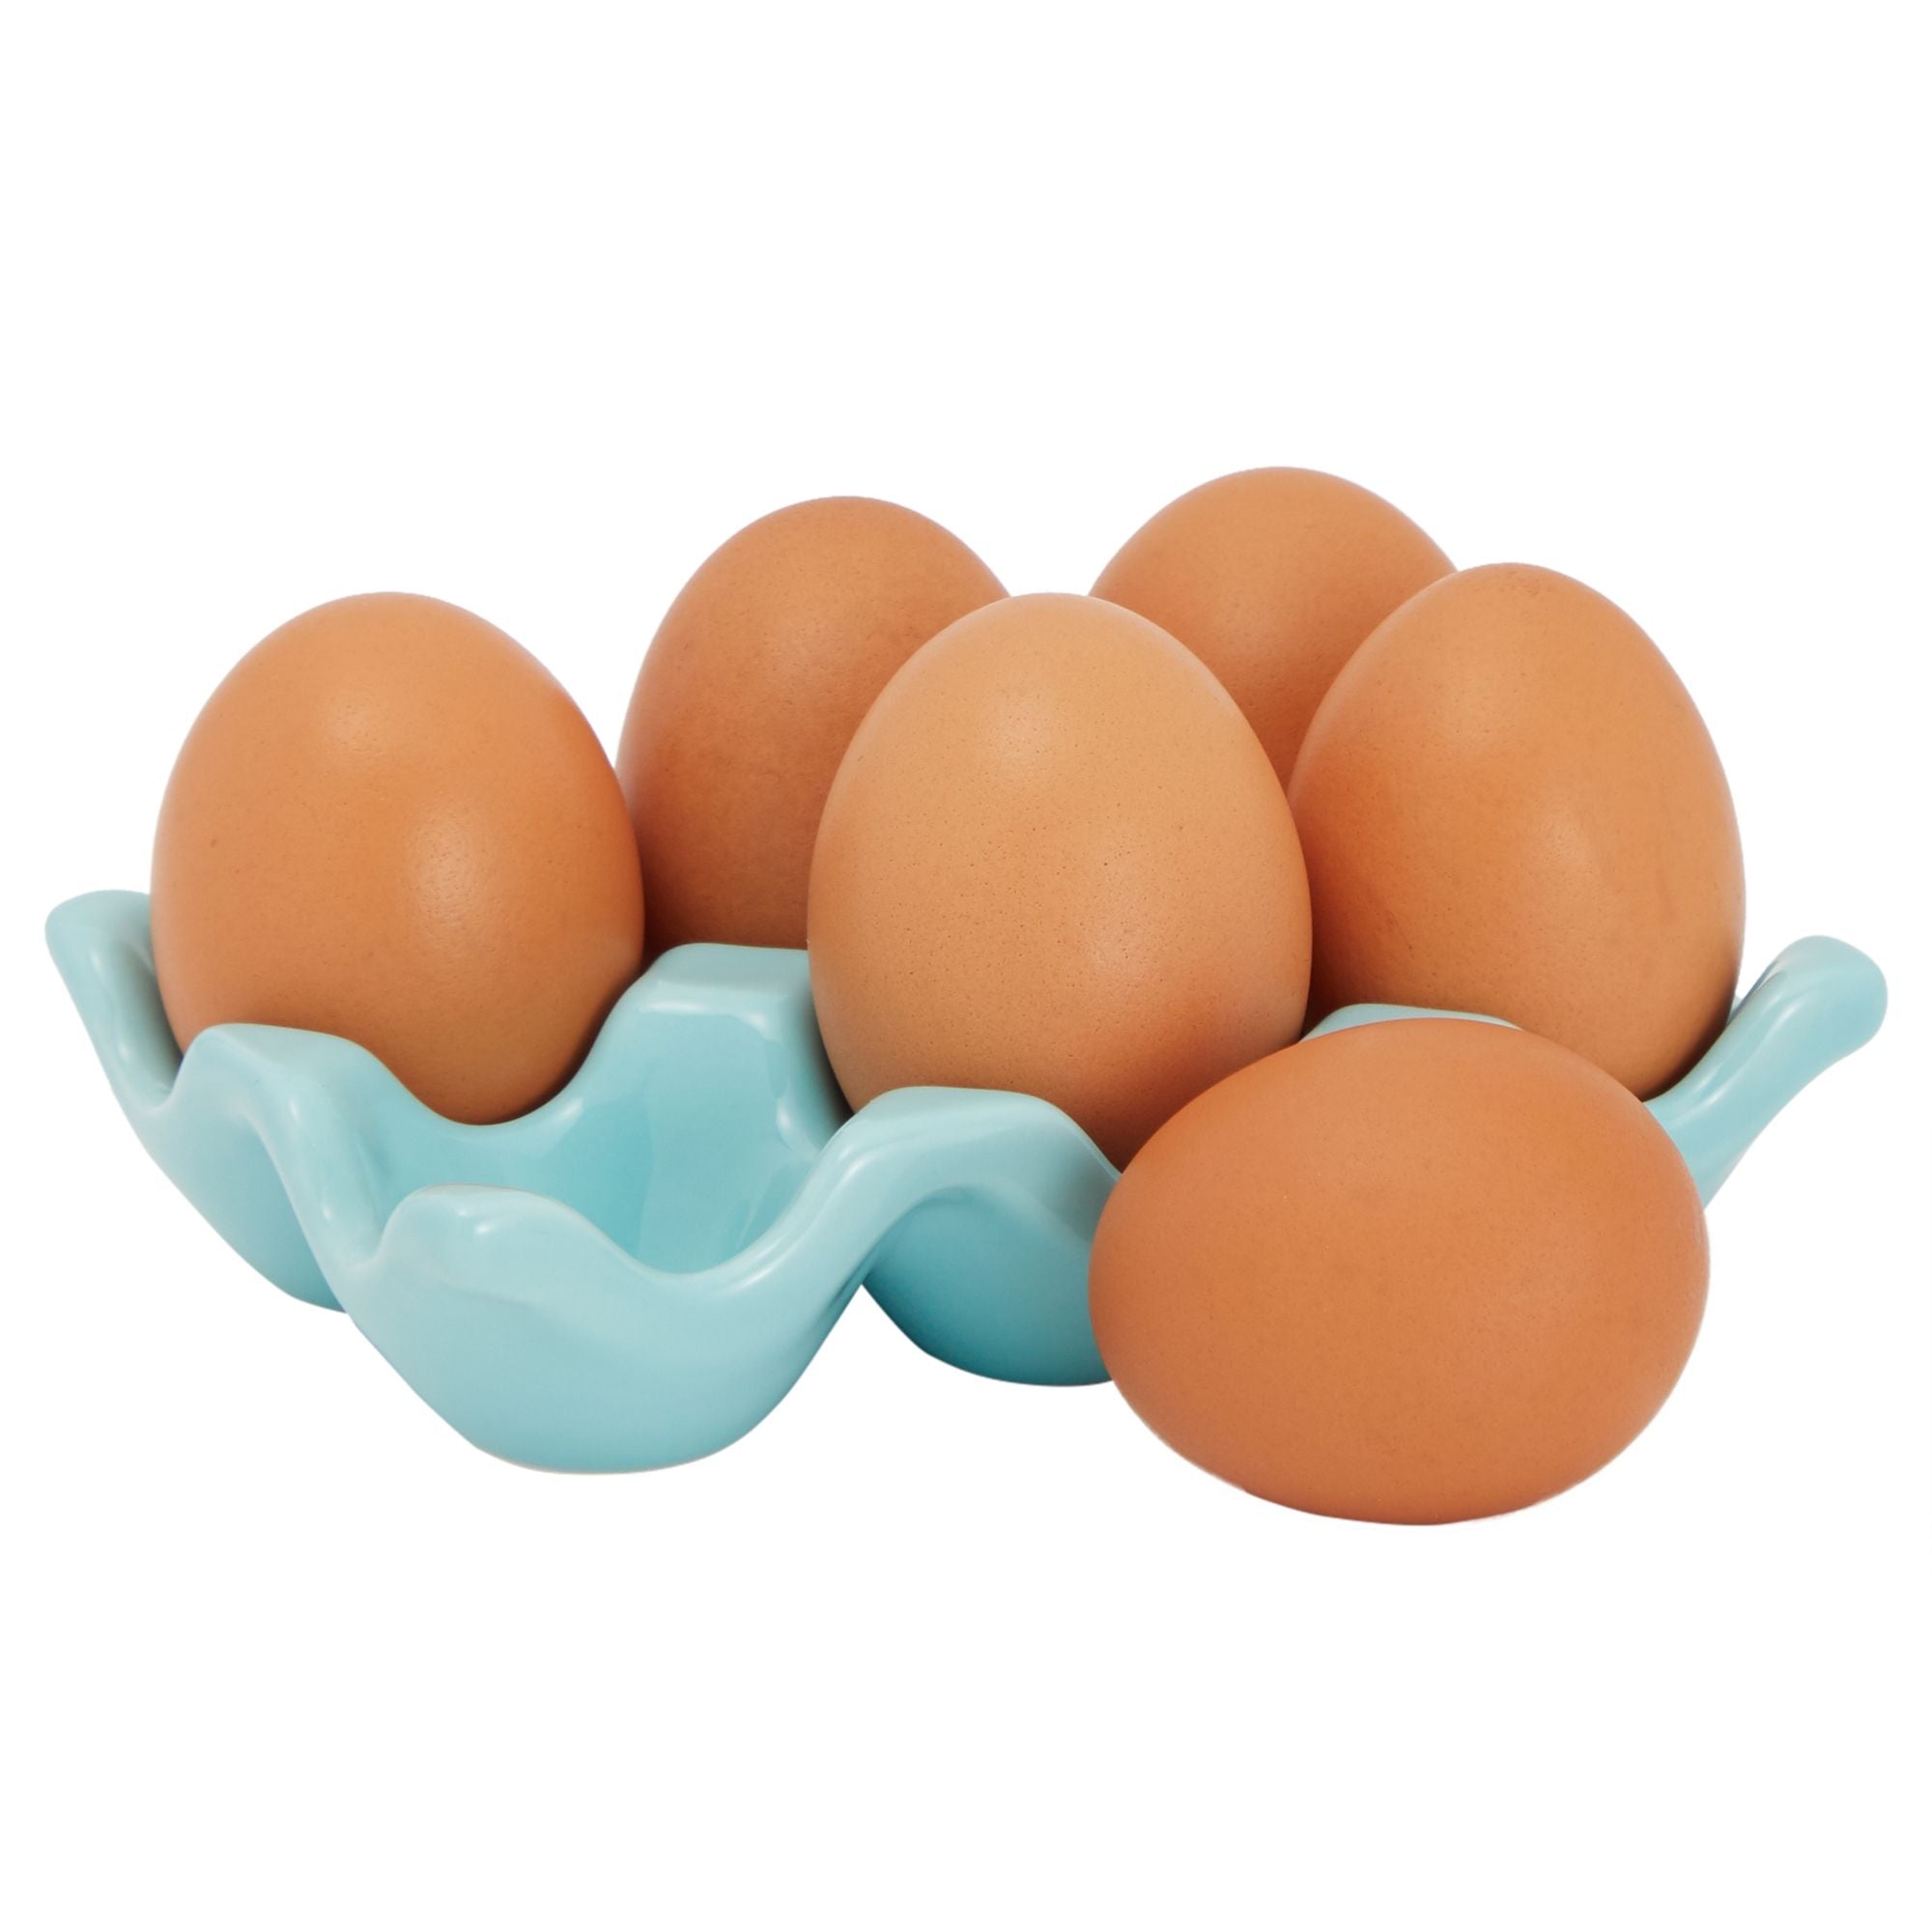  DRCOLLY 2 Pieces Fresh Egg Holder Countertop